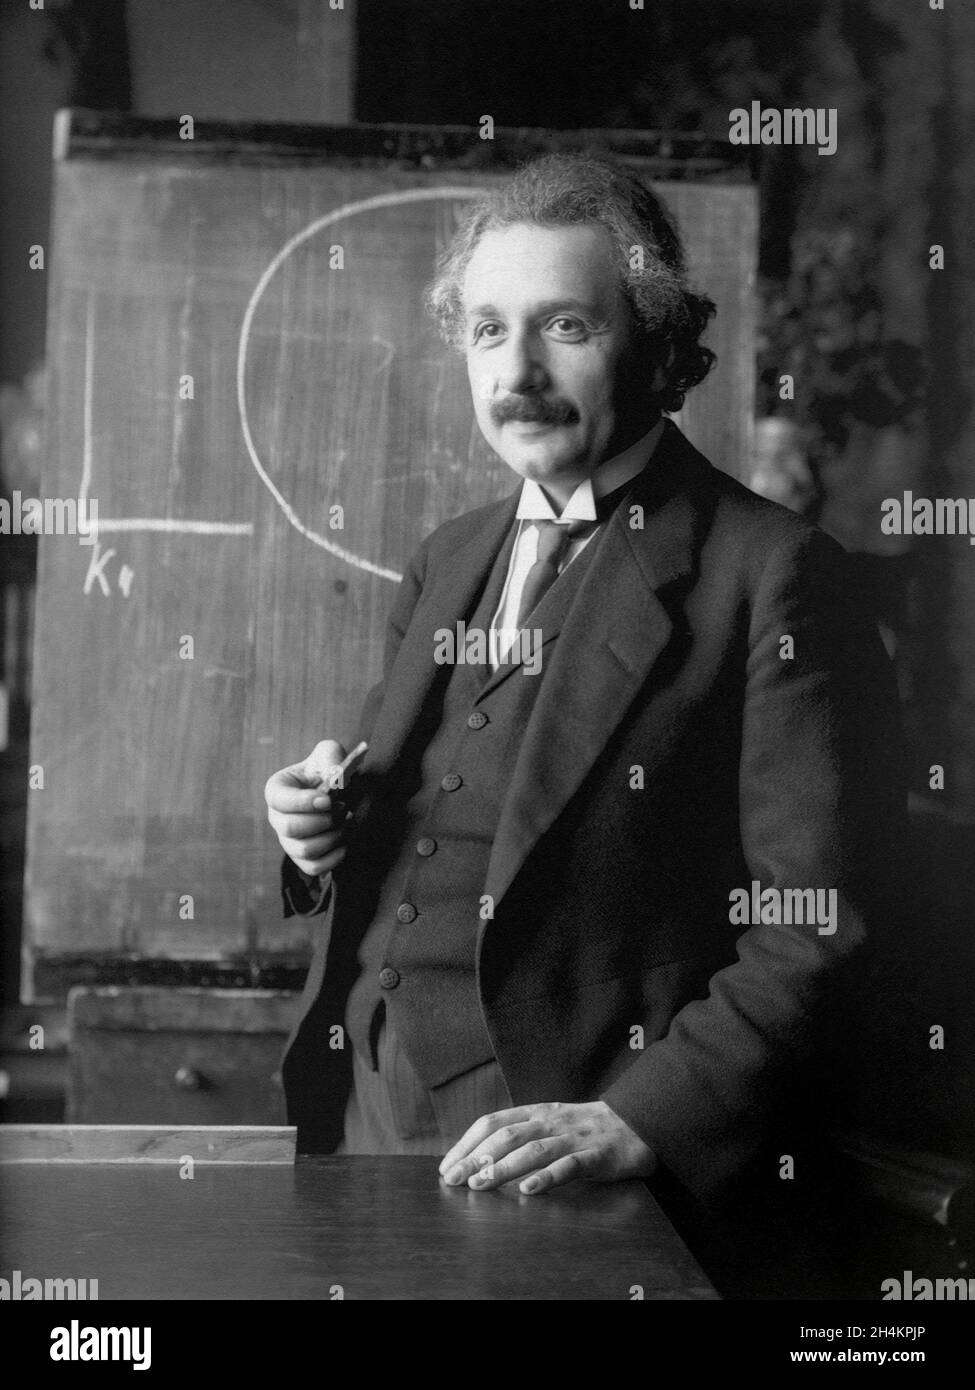 WIEN, ÖSTERREICH - 1921 - Albert Einstein während eines Vortrags in Wien Österreich - Foto: Geopix/Ferdinand Schmutzer Stockfoto